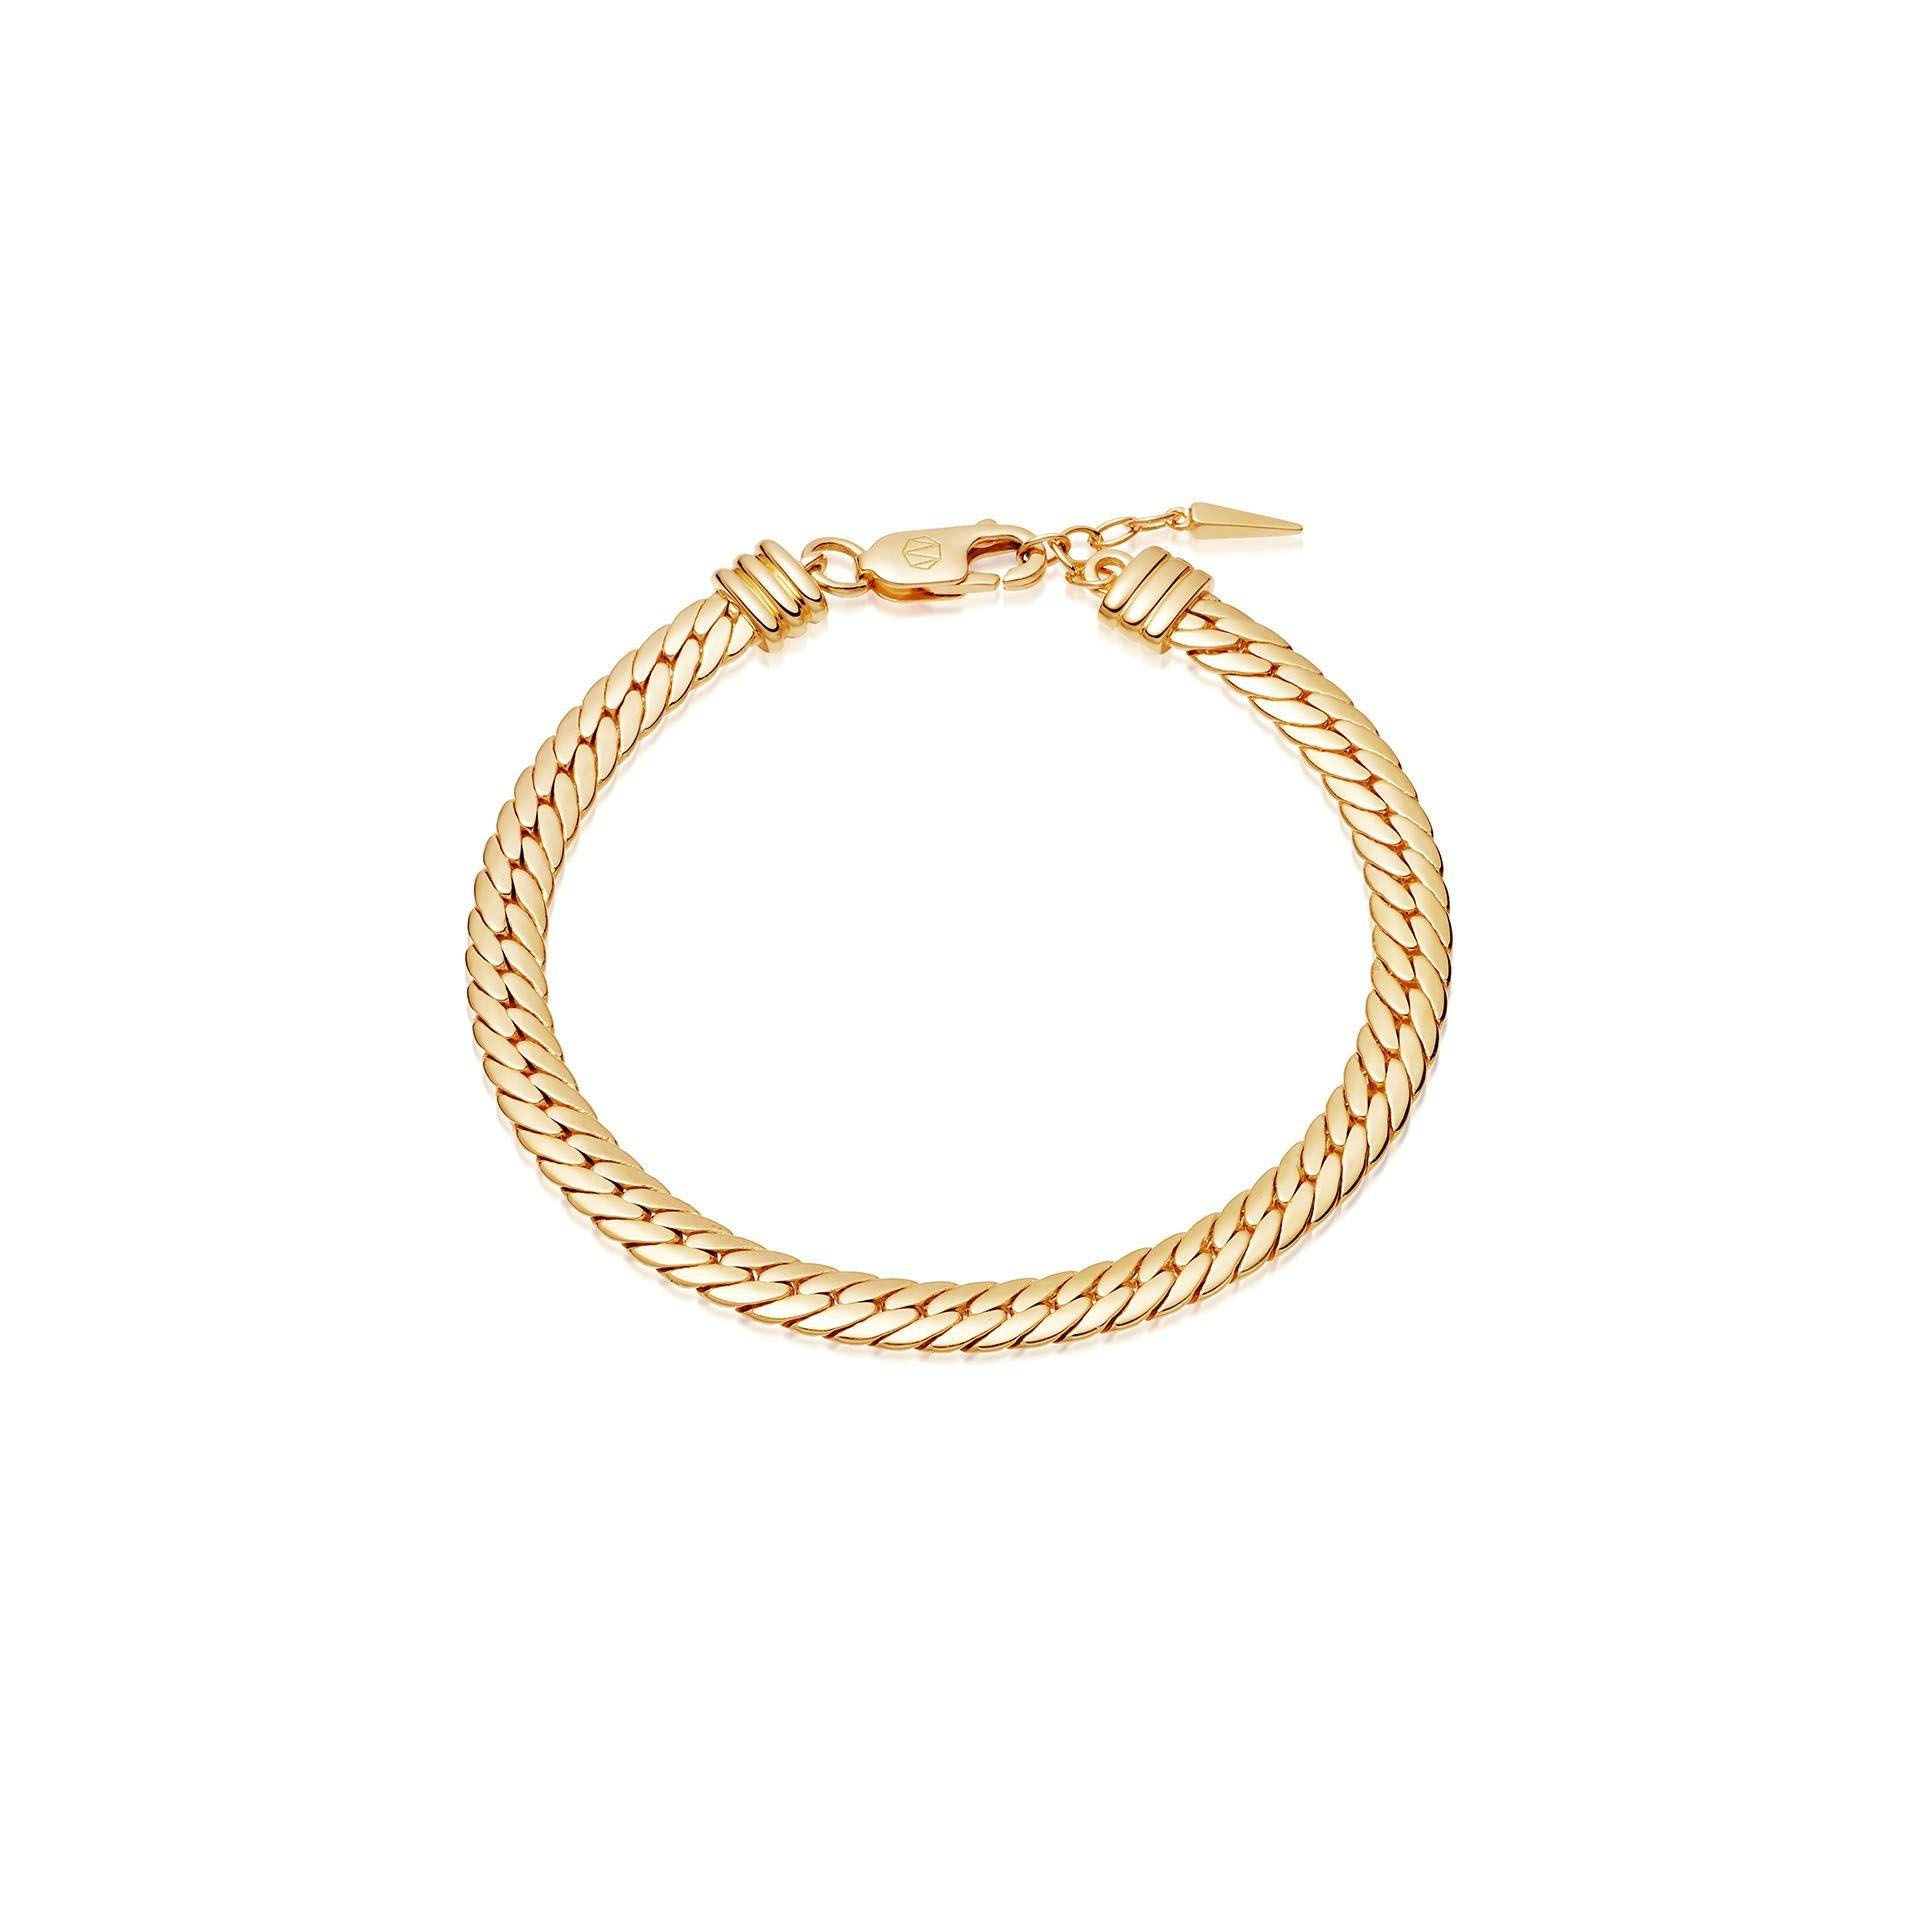 Оптовая продажа предлагает ваши идеи и дизайн ювелирных изделий OEM / ODM OEM браслет-цепочка в виде змеи из 18-каратного золота с покрытием из латуни или серебра